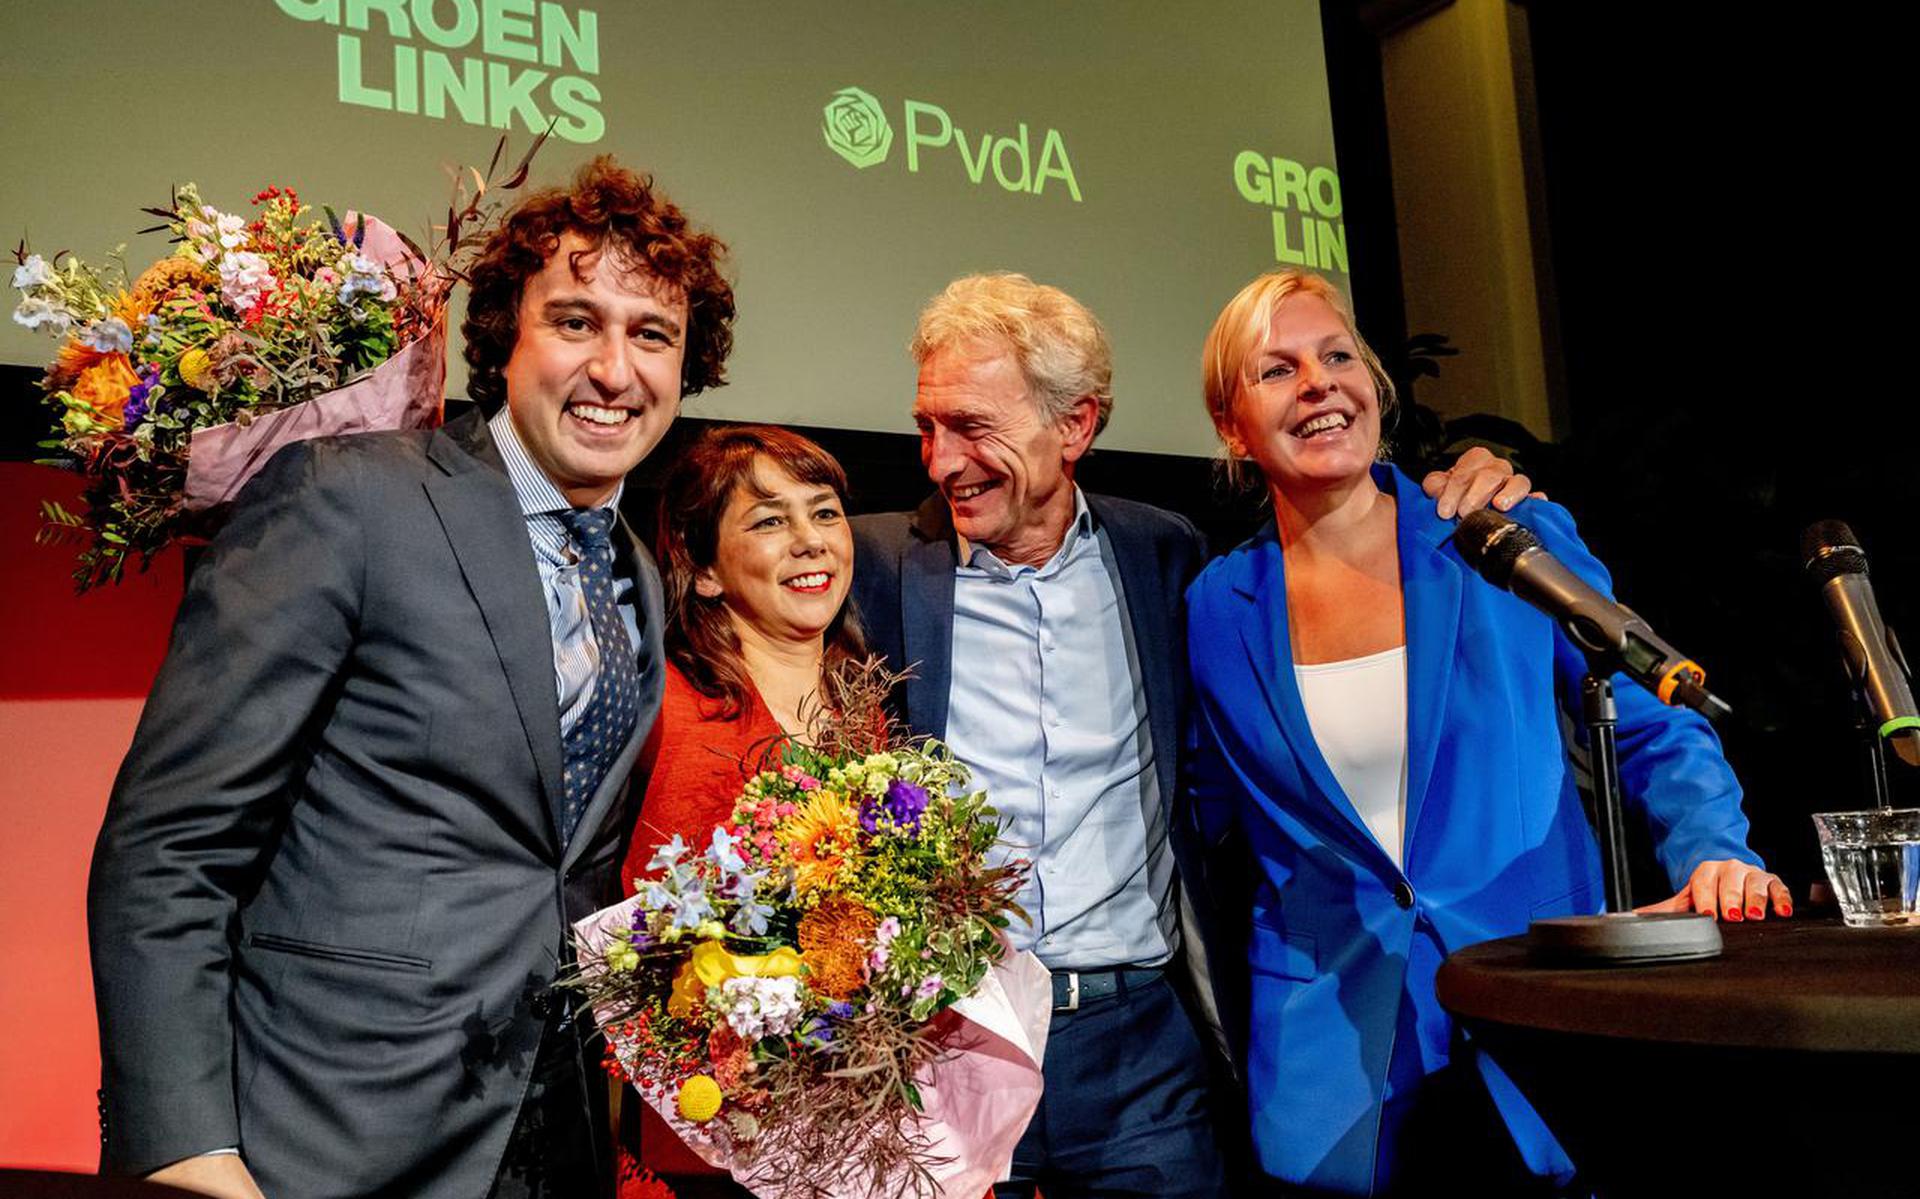 ‘PvdA en GroenLinks zien elk een reddingsboei in de ander.’ Foto: ANP